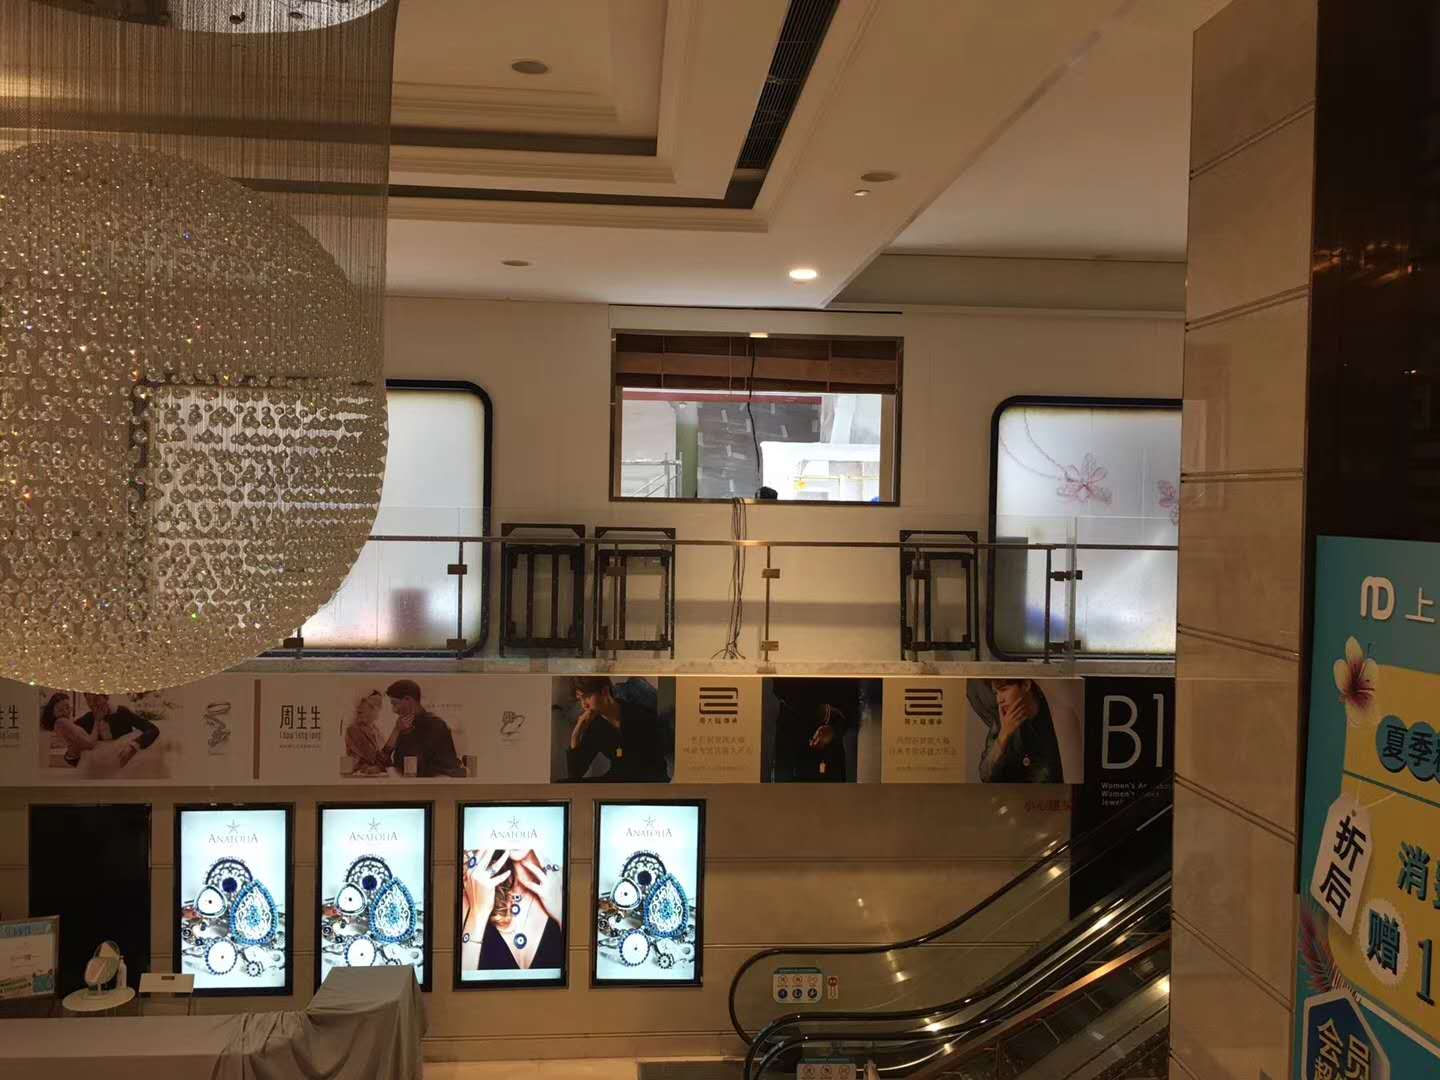 上海南京路步行街新世界商场拼接屏案例